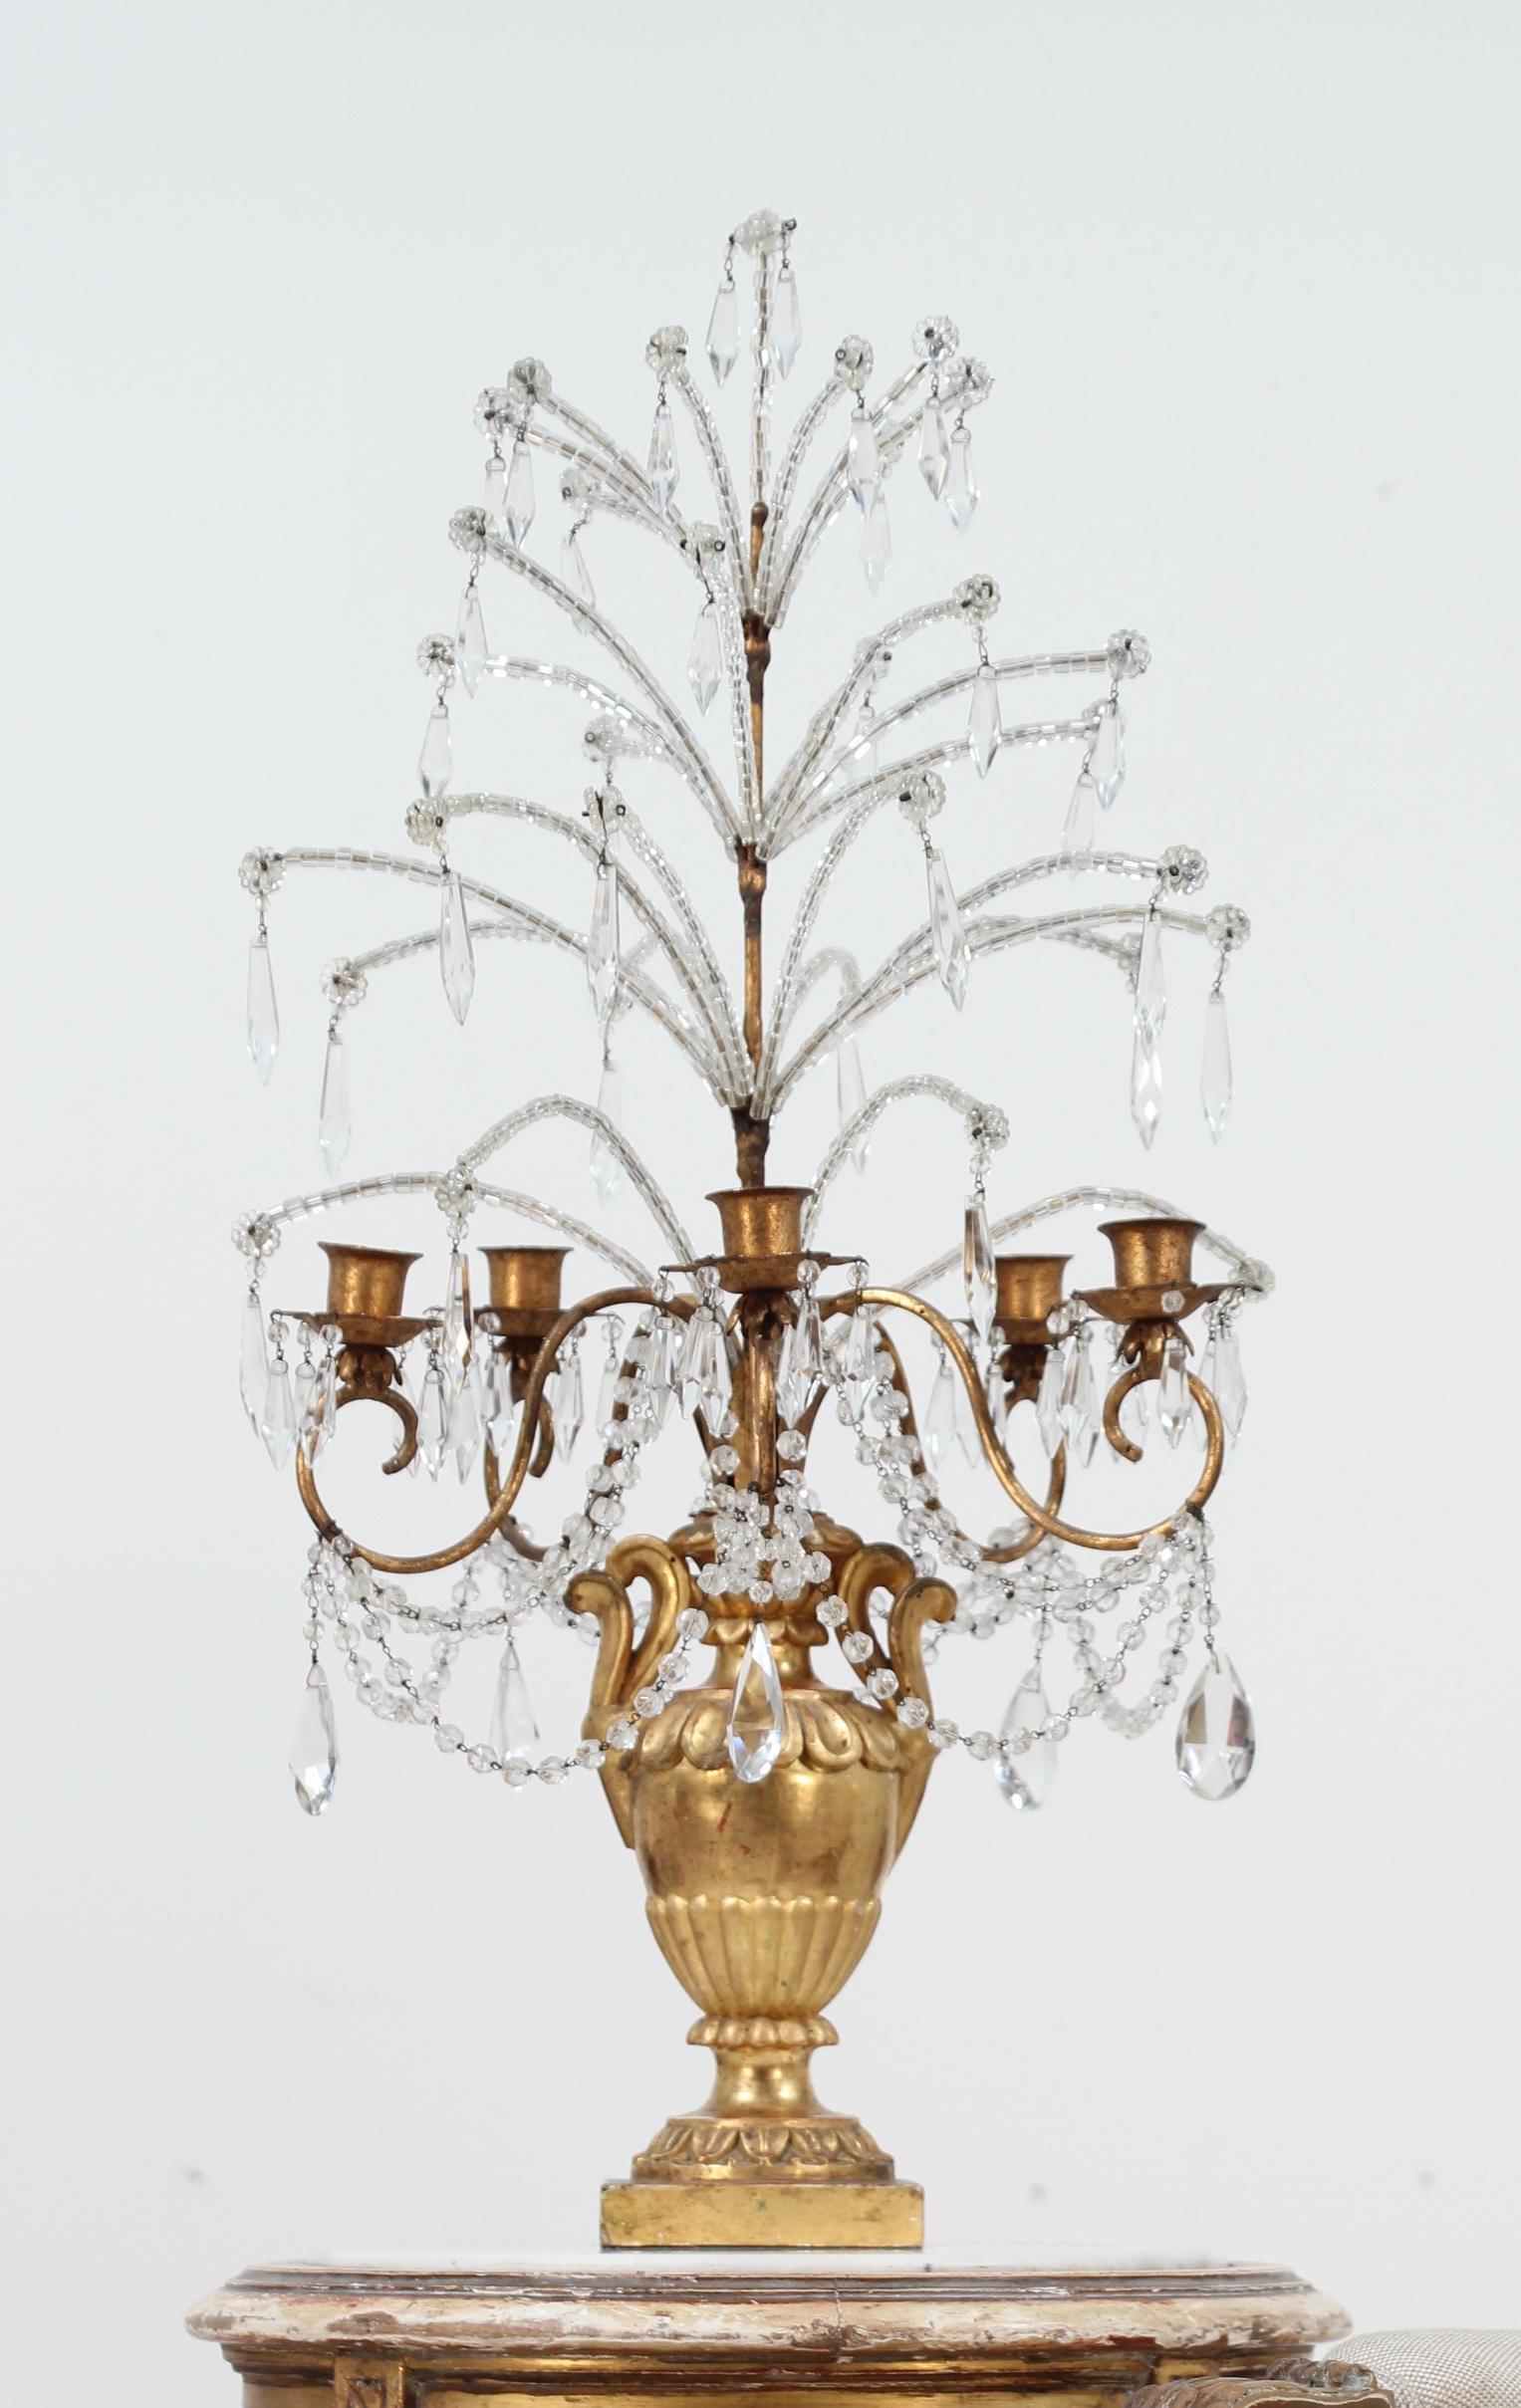 Candélabre ou girandole de style baroque en bois sculpté doré, fer et cristal, du début du 20e siècle.

Cette girandole de belle facture se compose d'une série de branches en perles de cristal qui partent d'un cadre en fer doré et qui sont montées